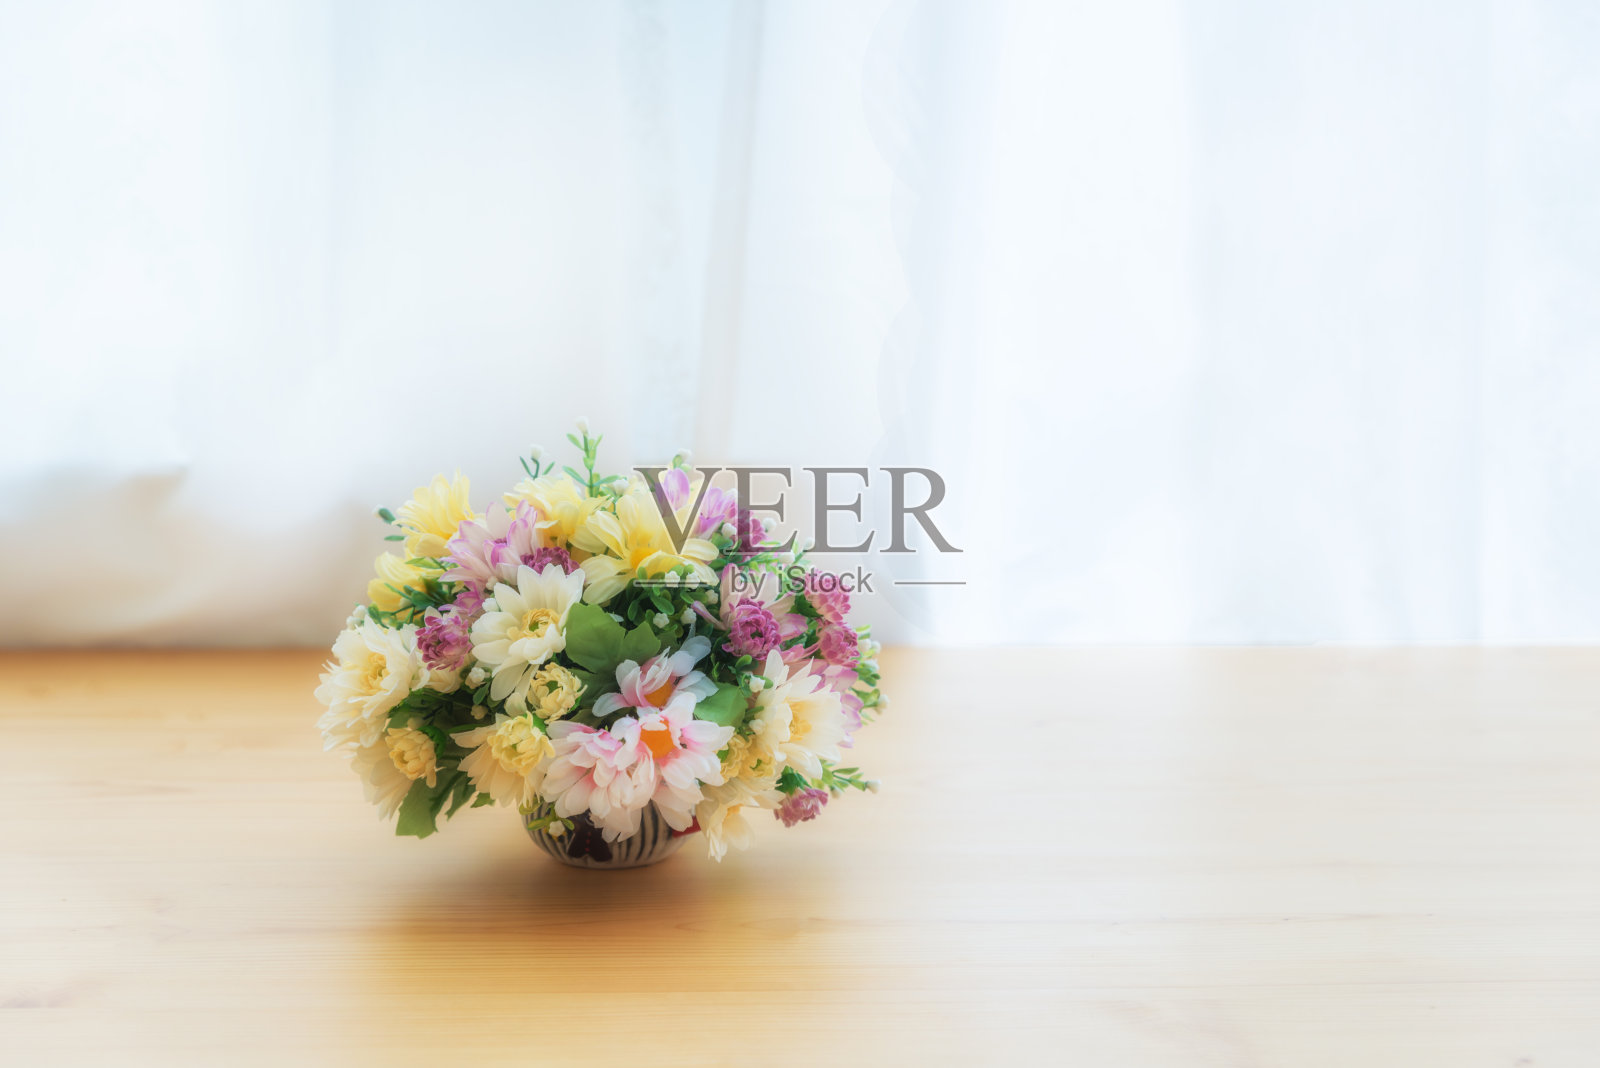 贴着窗帘的木桌上的陶瓷花盆里摆放着五颜六色的人造花。照片摄影图片